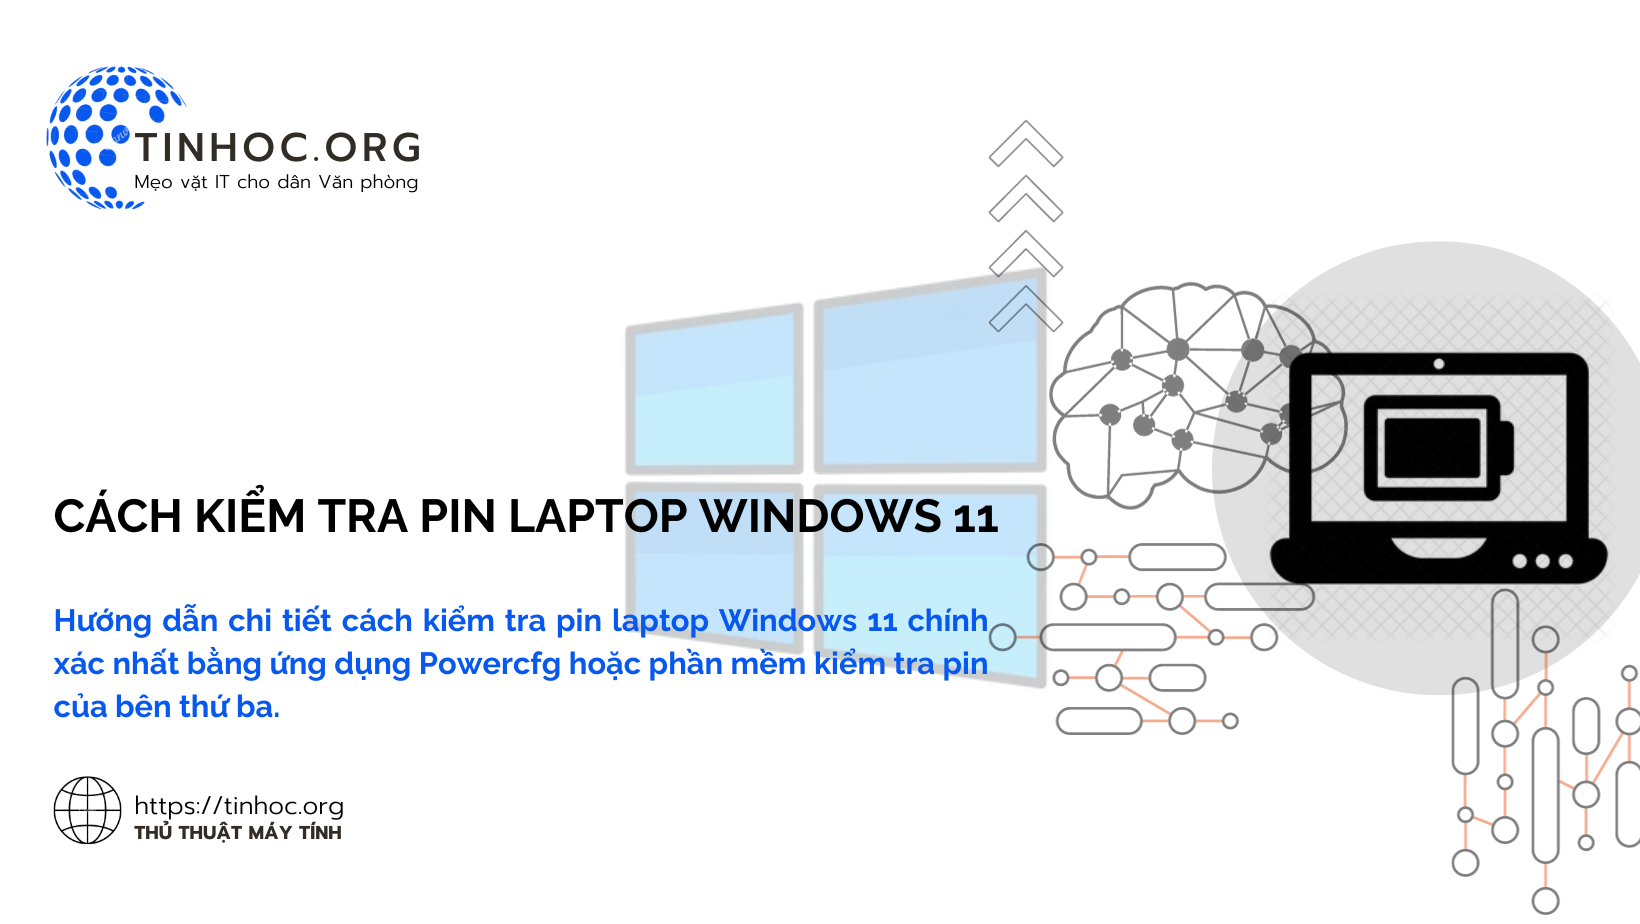 Hướng dẫn chi tiết cách kiểm tra pin laptop Windows 11 chính xác nhất bằng ứng dụng Powercfg hoặc phần mềm kiểm tra pin của bên thứ ba.